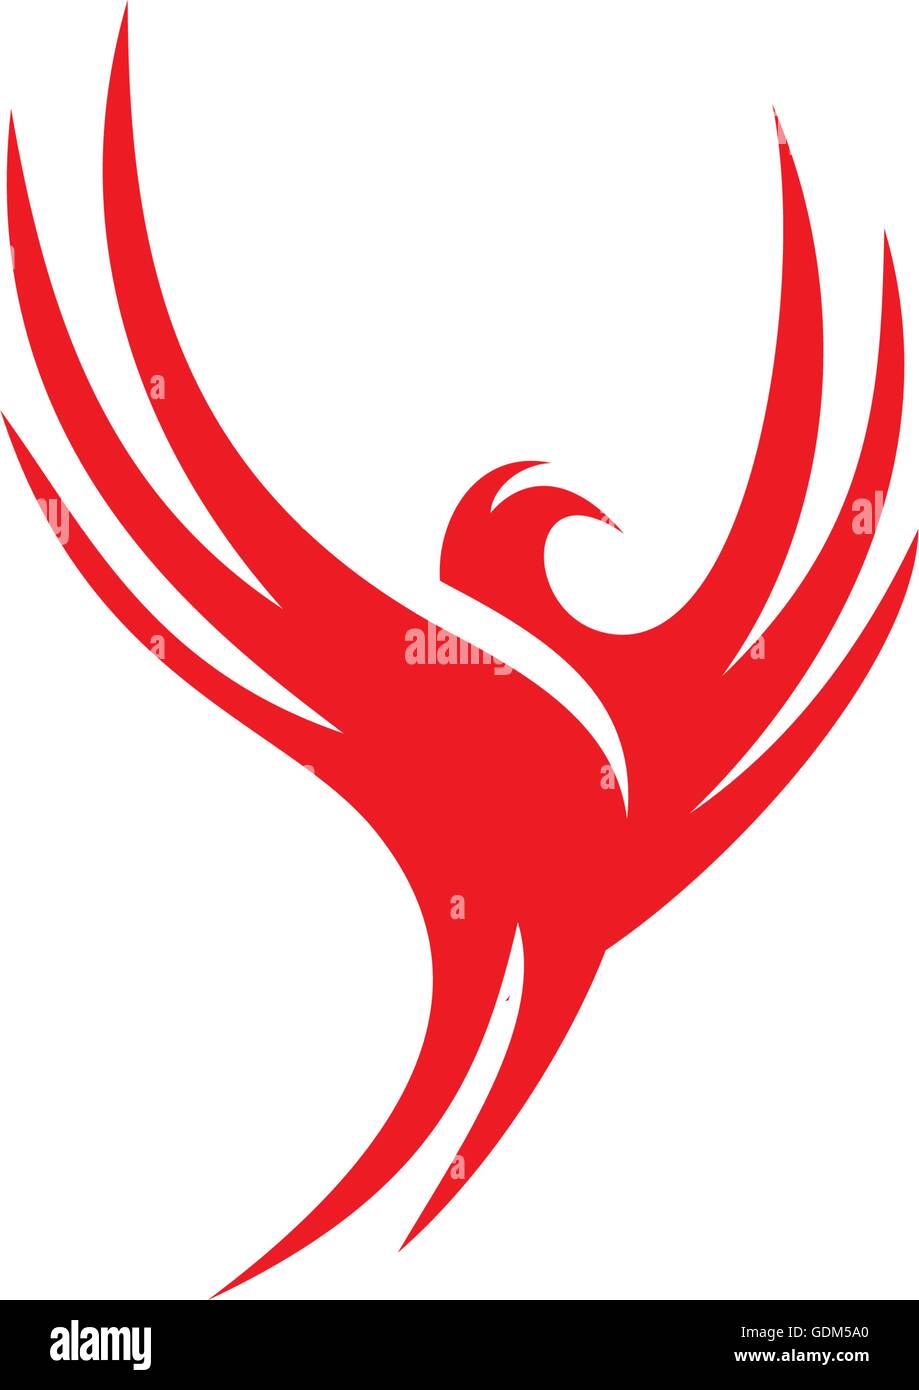 Rosso isolato di volo di uccelli logo vettoriale. Diffusione di ali di colomba logotipo di silhouette. Illustrazione Vettoriale